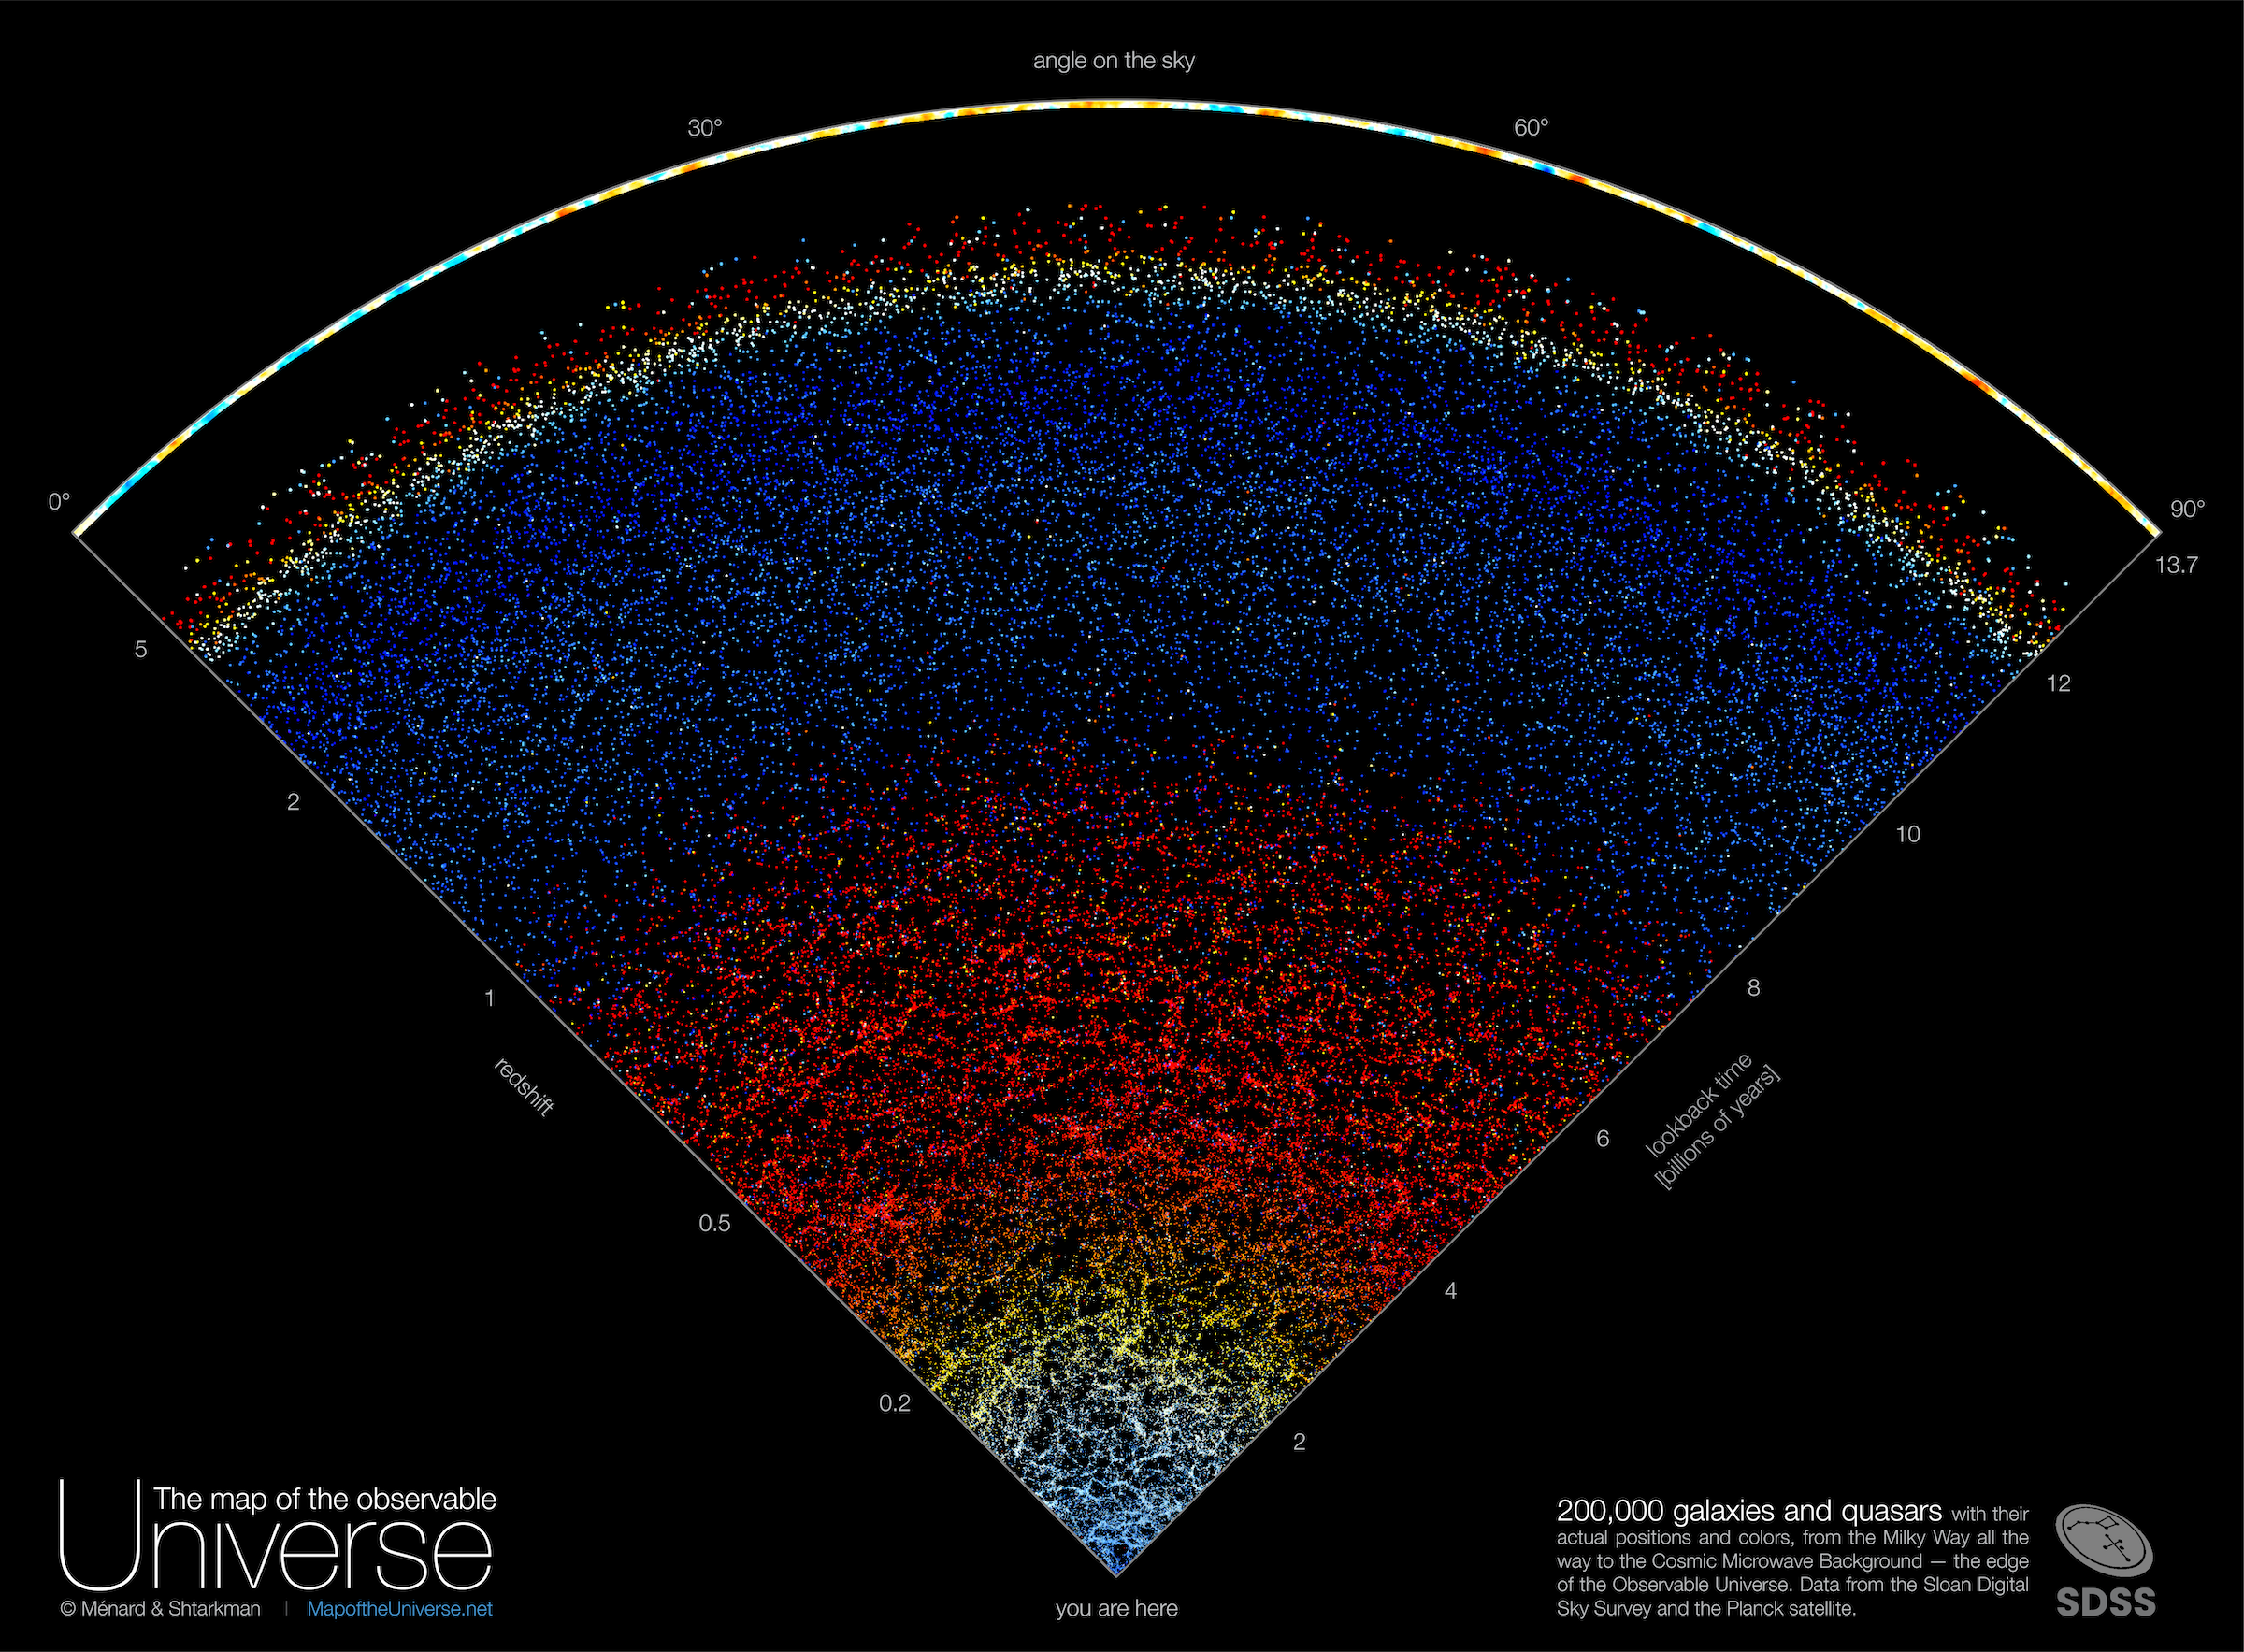 Des scientifiques de l’université Johns Hopkins ont cré une carte interactive de l’Univers